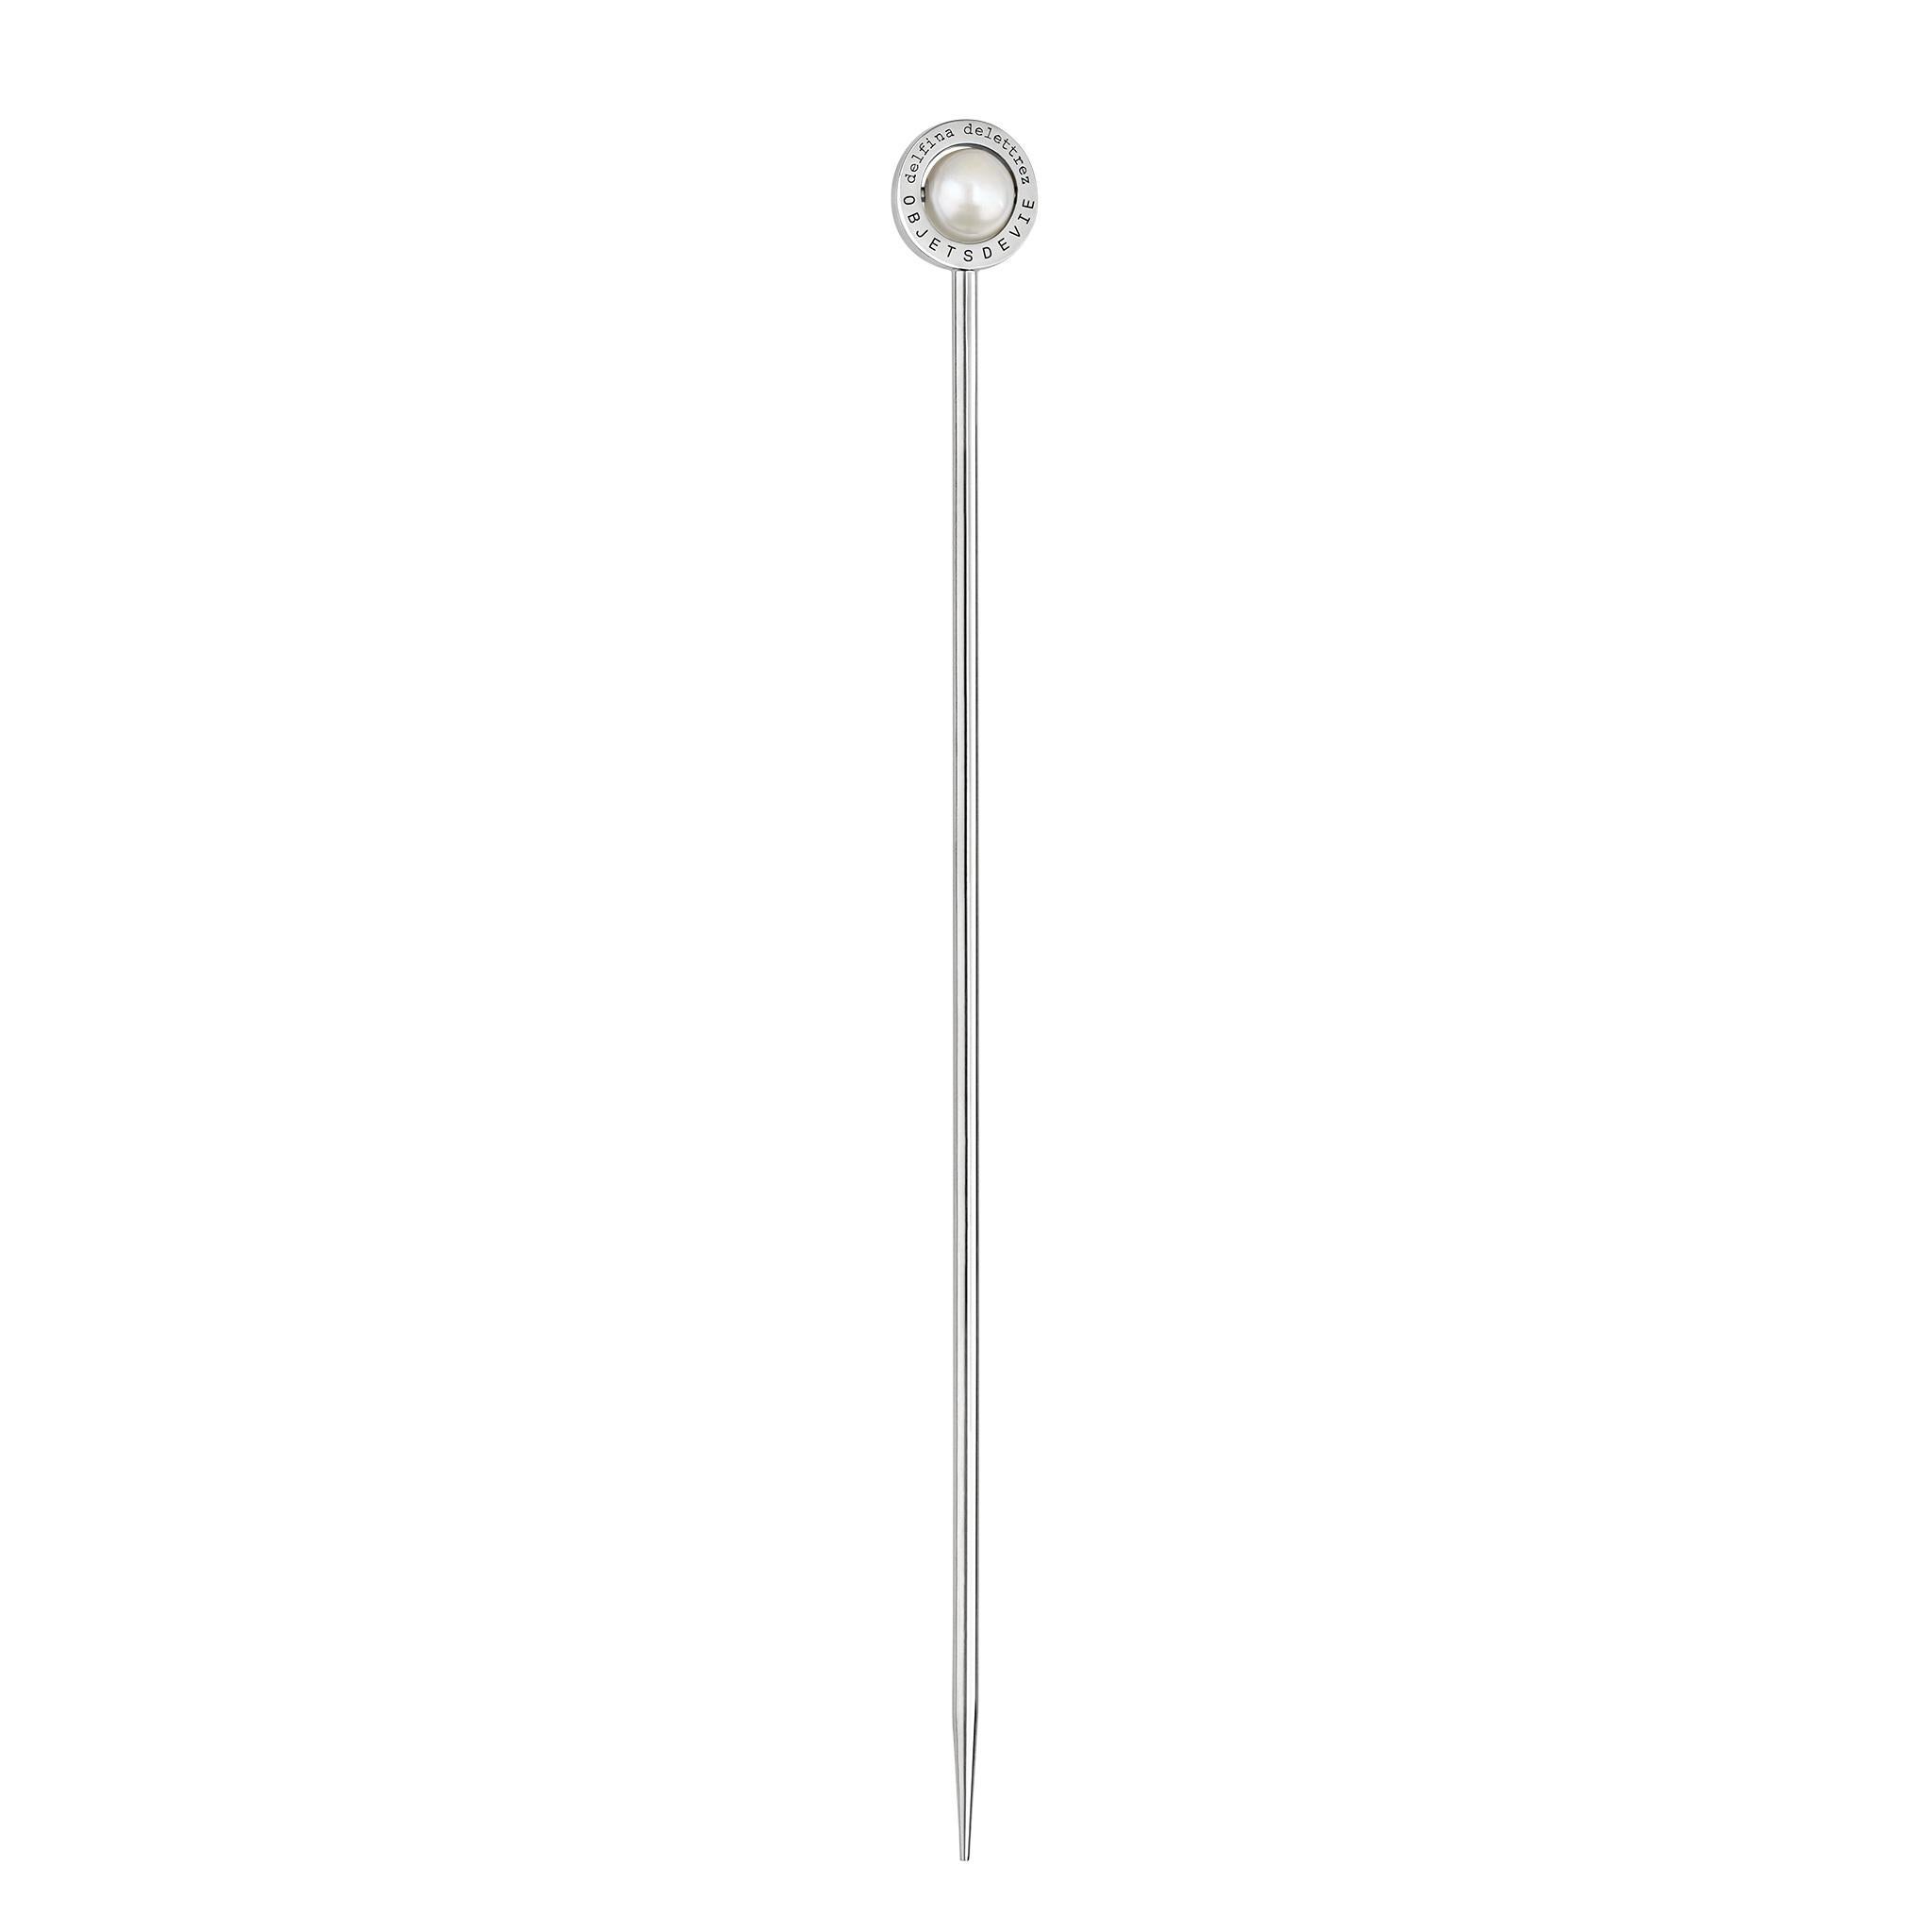 Der Stecco 925 Cocktailstab ist eine 11,5 cm lange Nadel aus Sterlingsilber, die mit einem flachen Silberring versehen ist, der entweder eine sich drehende Perle, einen grünen Achat oder eine blaue oder rosa Chalcedonkugel einrahmt. Zum Aufspießen